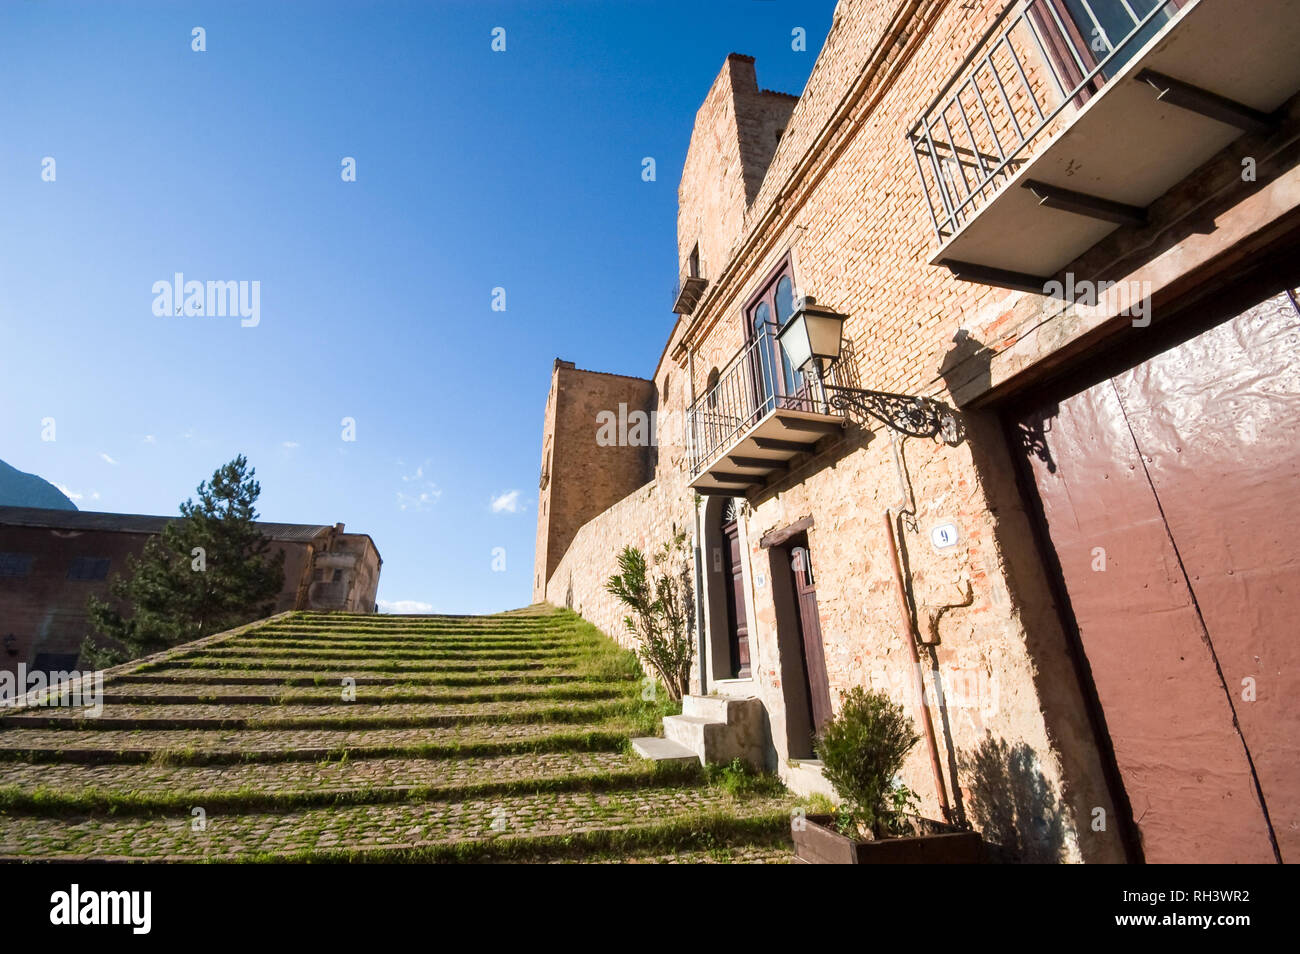 Stairs to the Castello di Castelbuono, also known as Castello dei Ventimiglia. Palermo Province, Sicily. Stock Photo